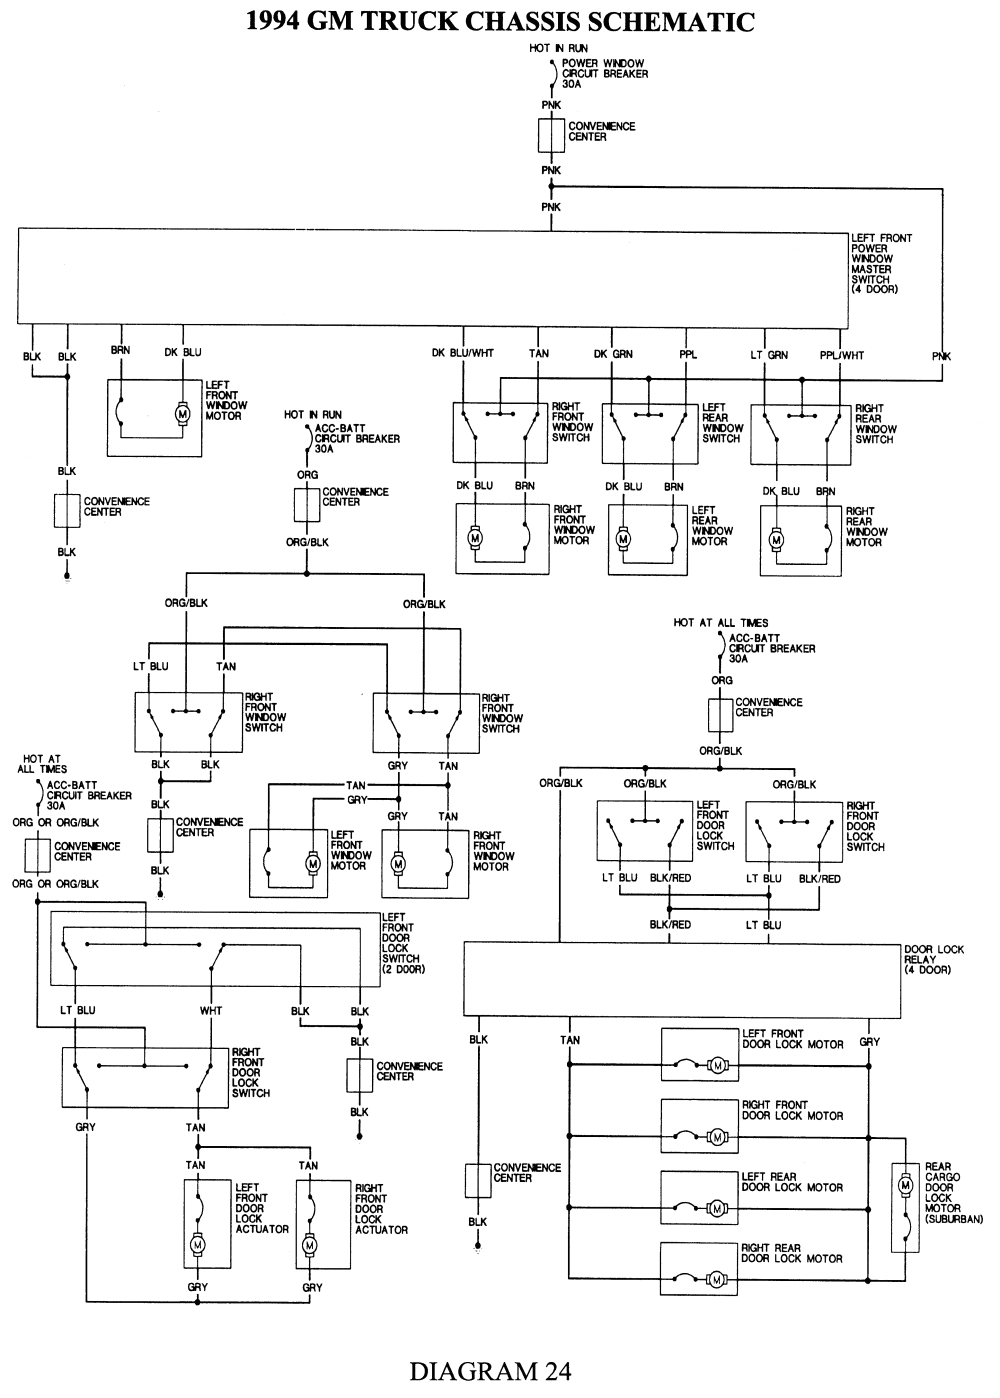 94 chevy s10 wiring diagram wiring diagram host 94 s10 wiring schematic